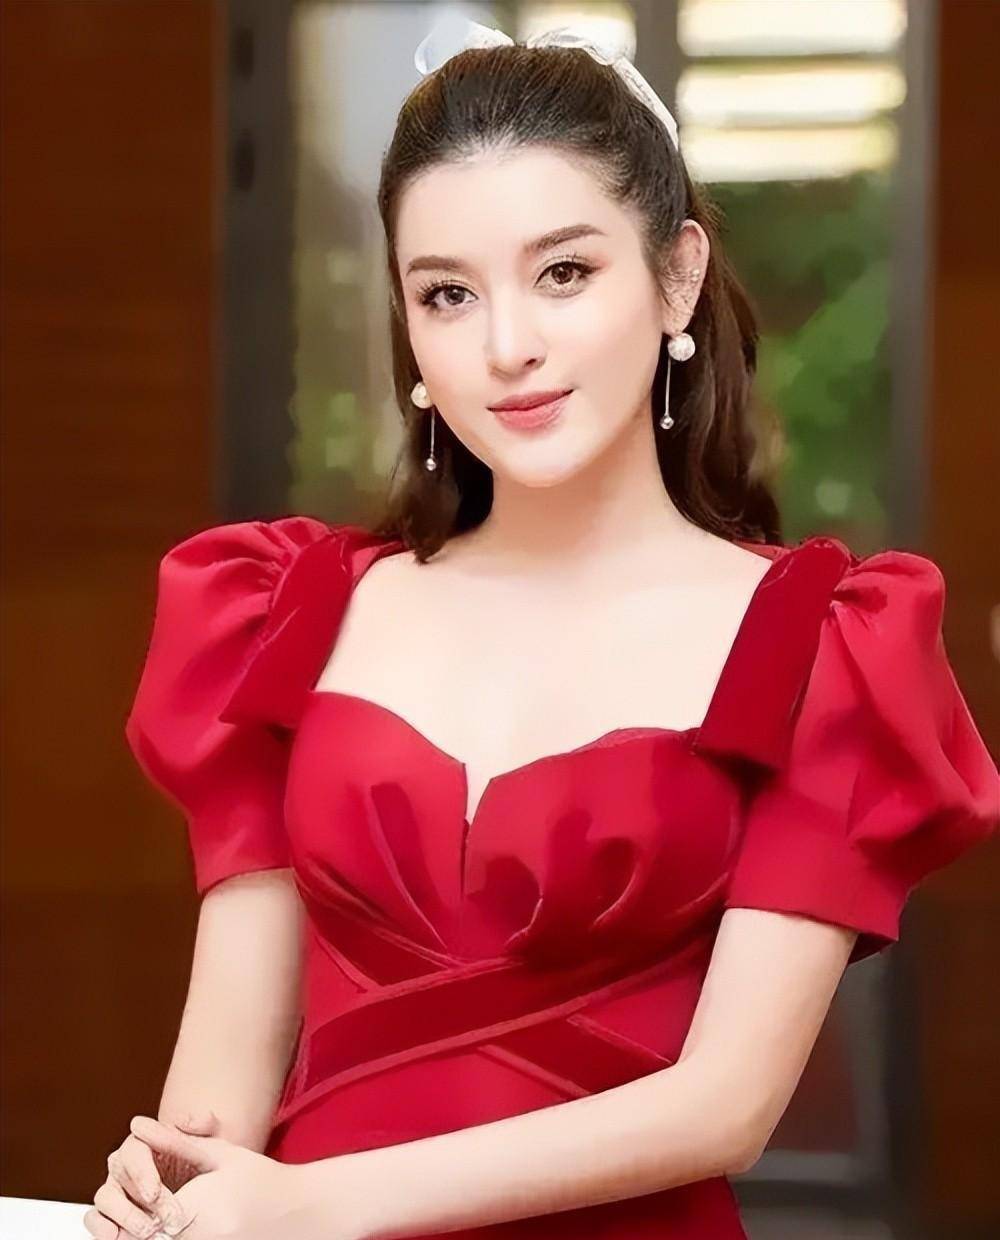 越南国宝级美人，红唇丹齿美丽动人，极致的穿搭演绎高贵名媛风